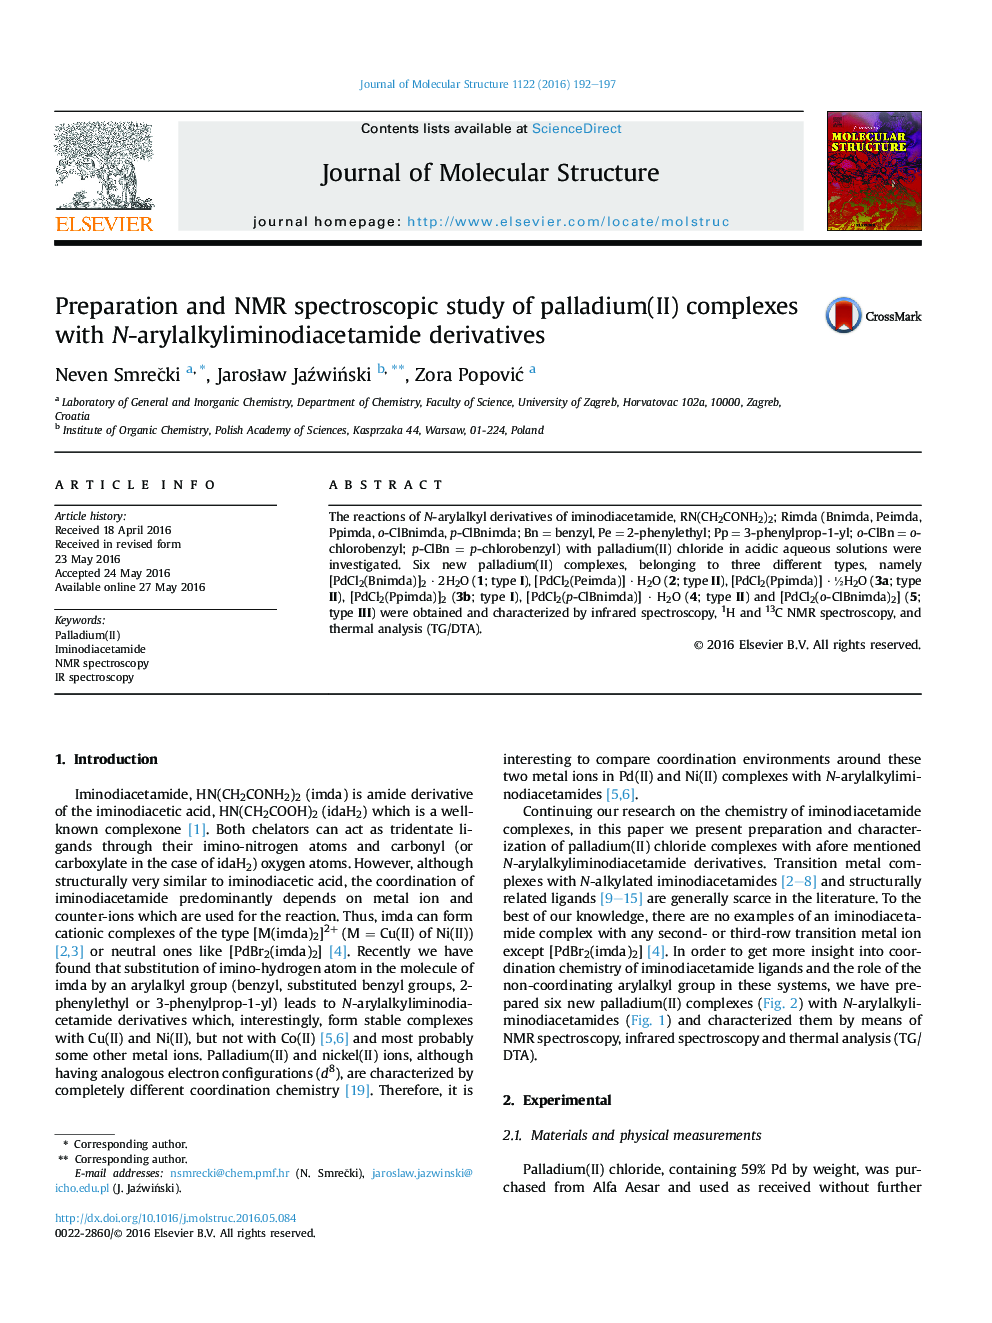 آماده سازی و بررسی طیف سنجی NMR از کمپلکس های پالادیوم (II) با مشتقات N-arylalkyliminodiacetamide